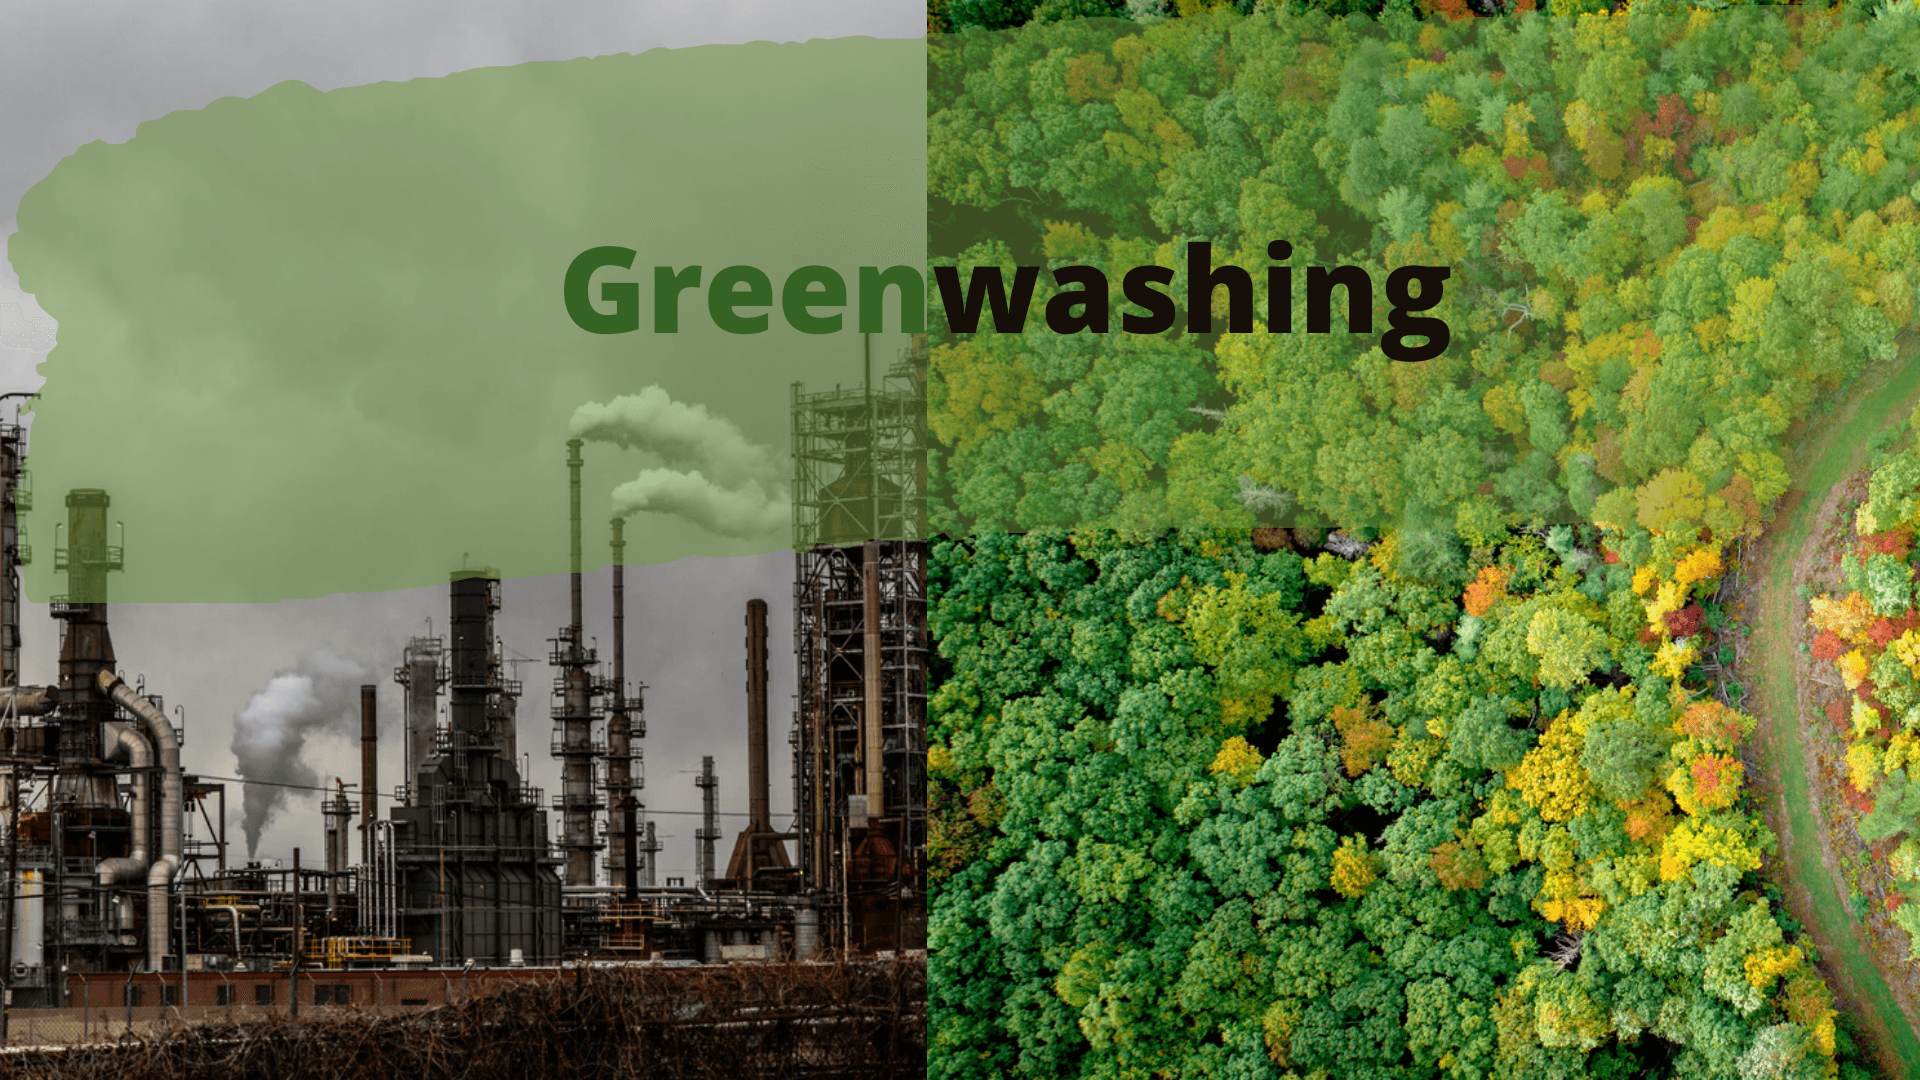 greenwashing.png
		